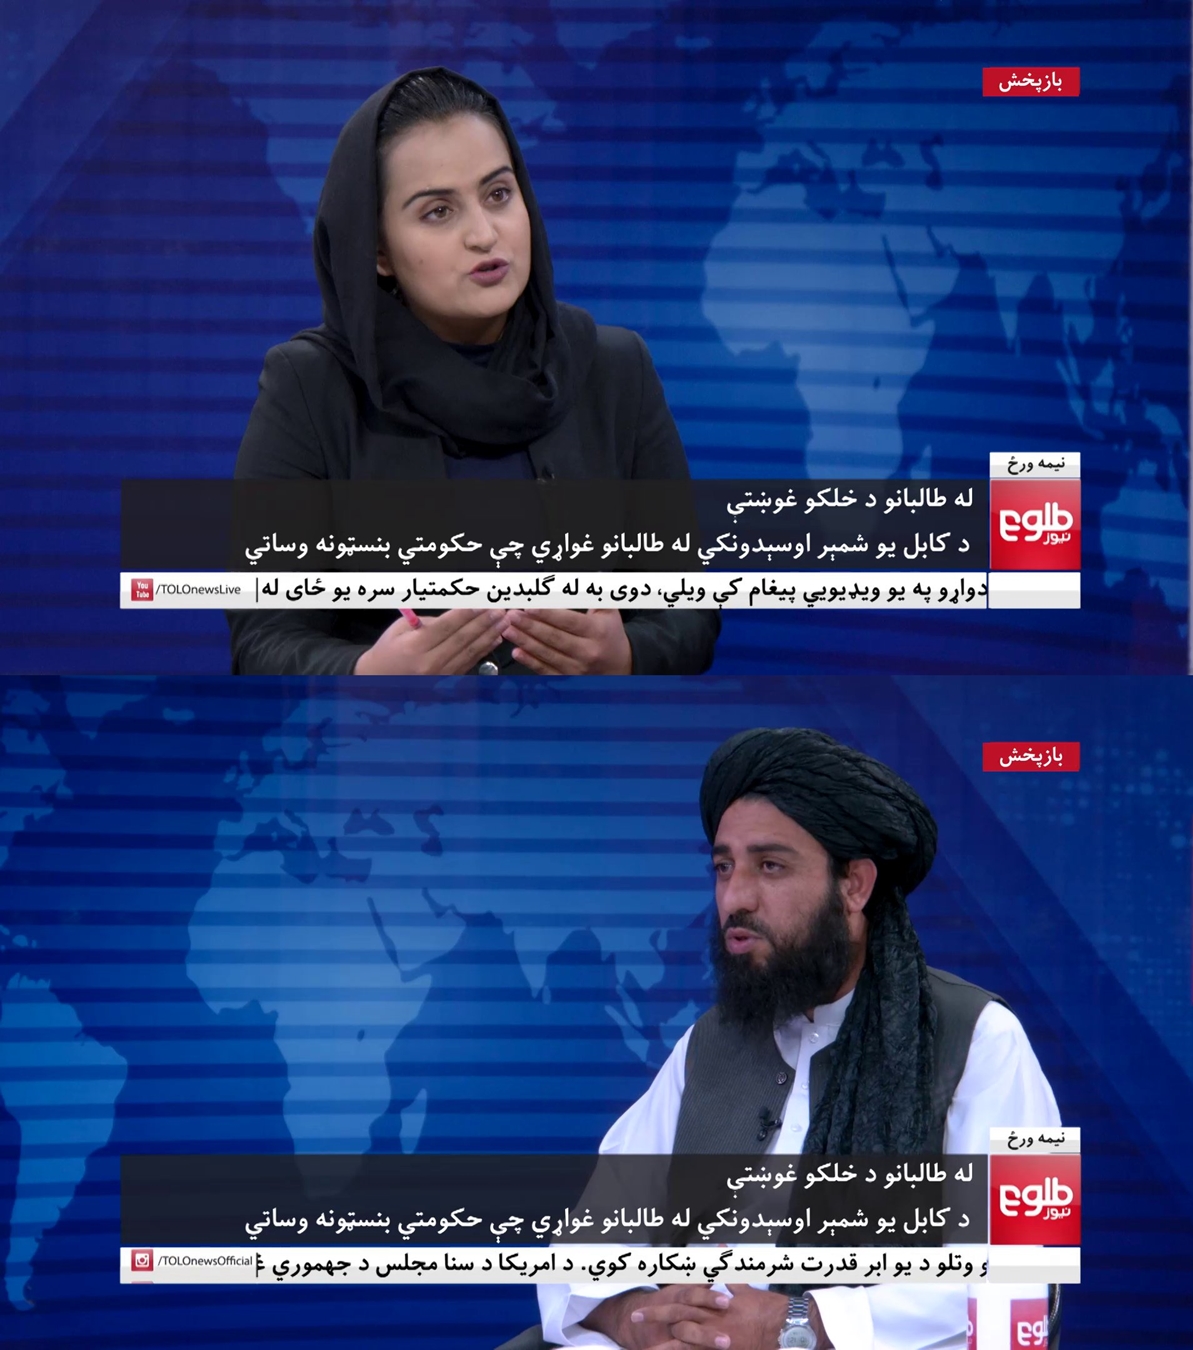 8월 17일(현지시간) 아프가니스탄 수도 카불을 장악한 탈레반의 미디어 담당 간부가 유력 뉴스채널인 톨로뉴스 스튜디오를 찾아와 여성 앵커와 마주 앉아 인터뷰를 하고 있다. 2021.8.17